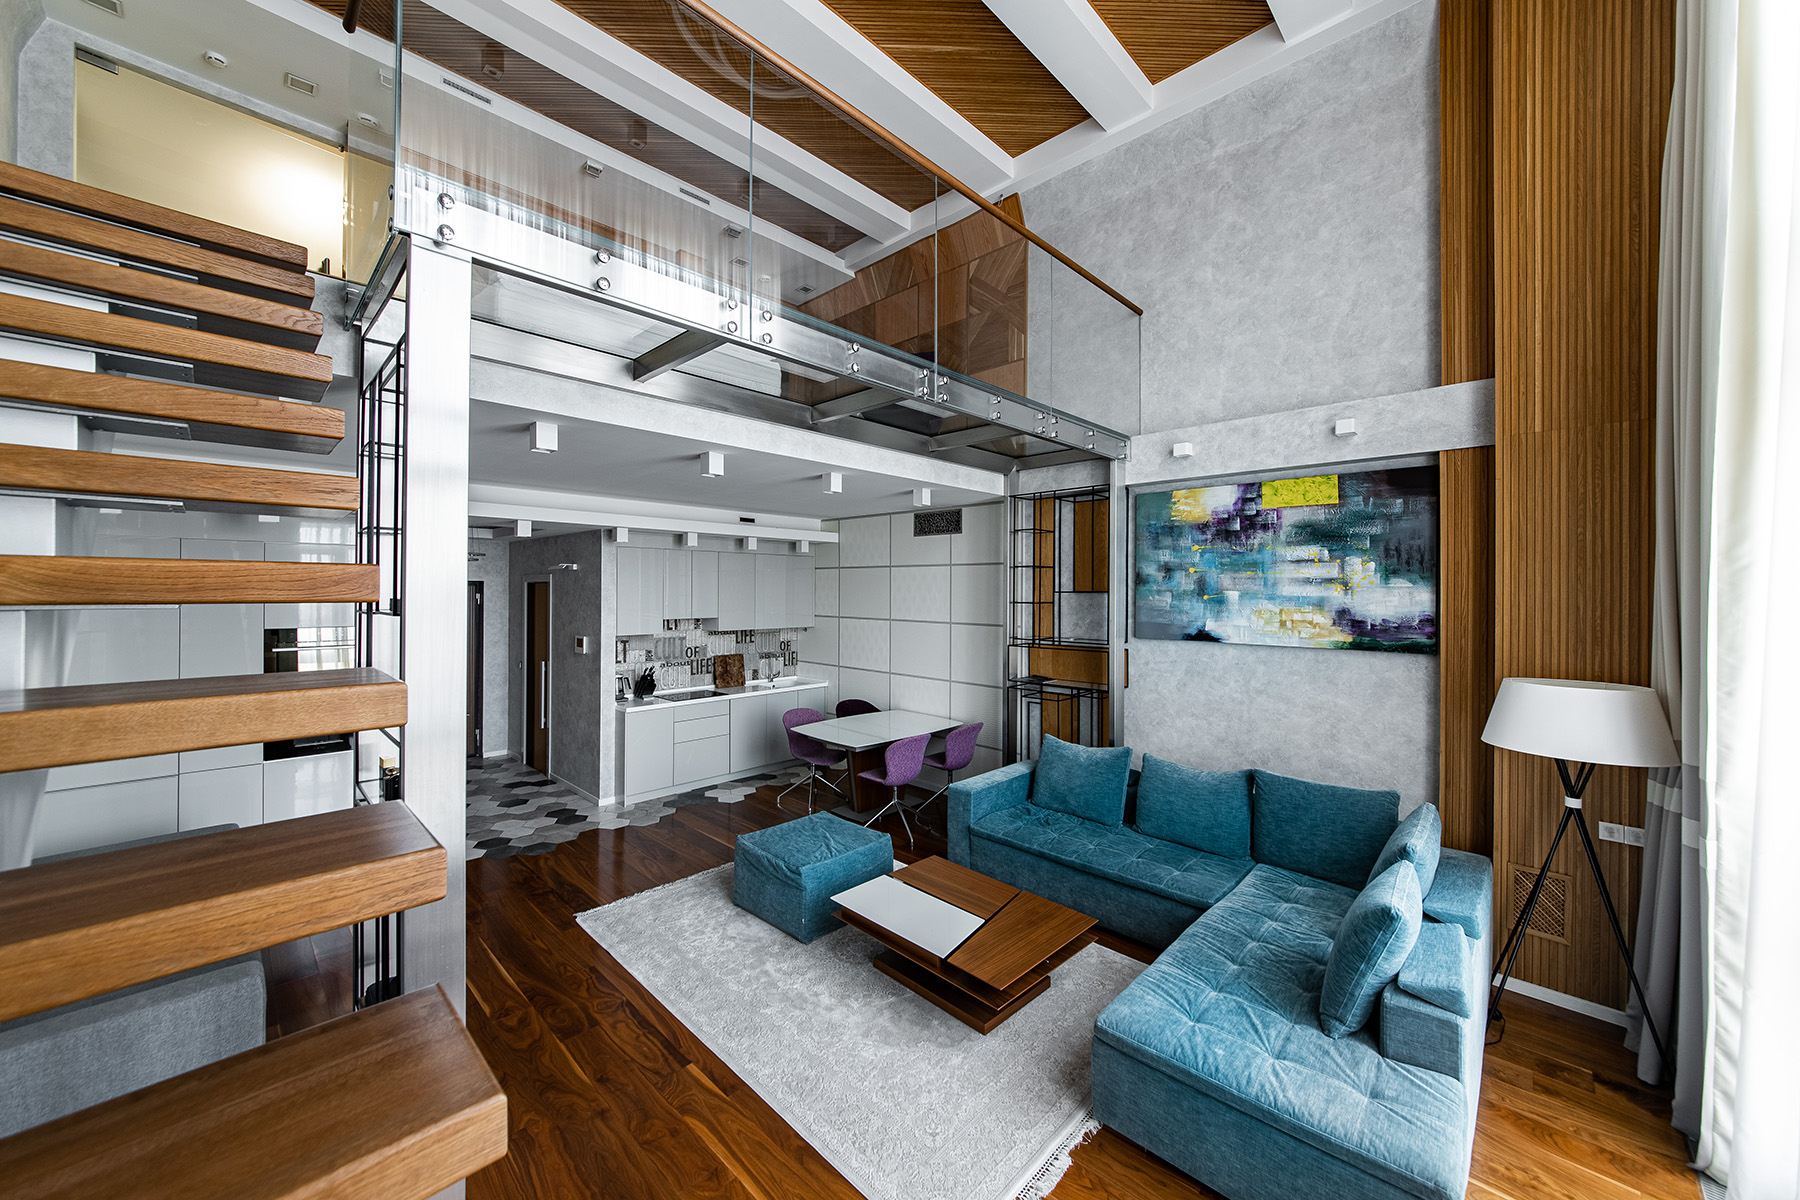 Апартаменты в стиле Lounge от архитектора-дизайнера Натальи Медведевой